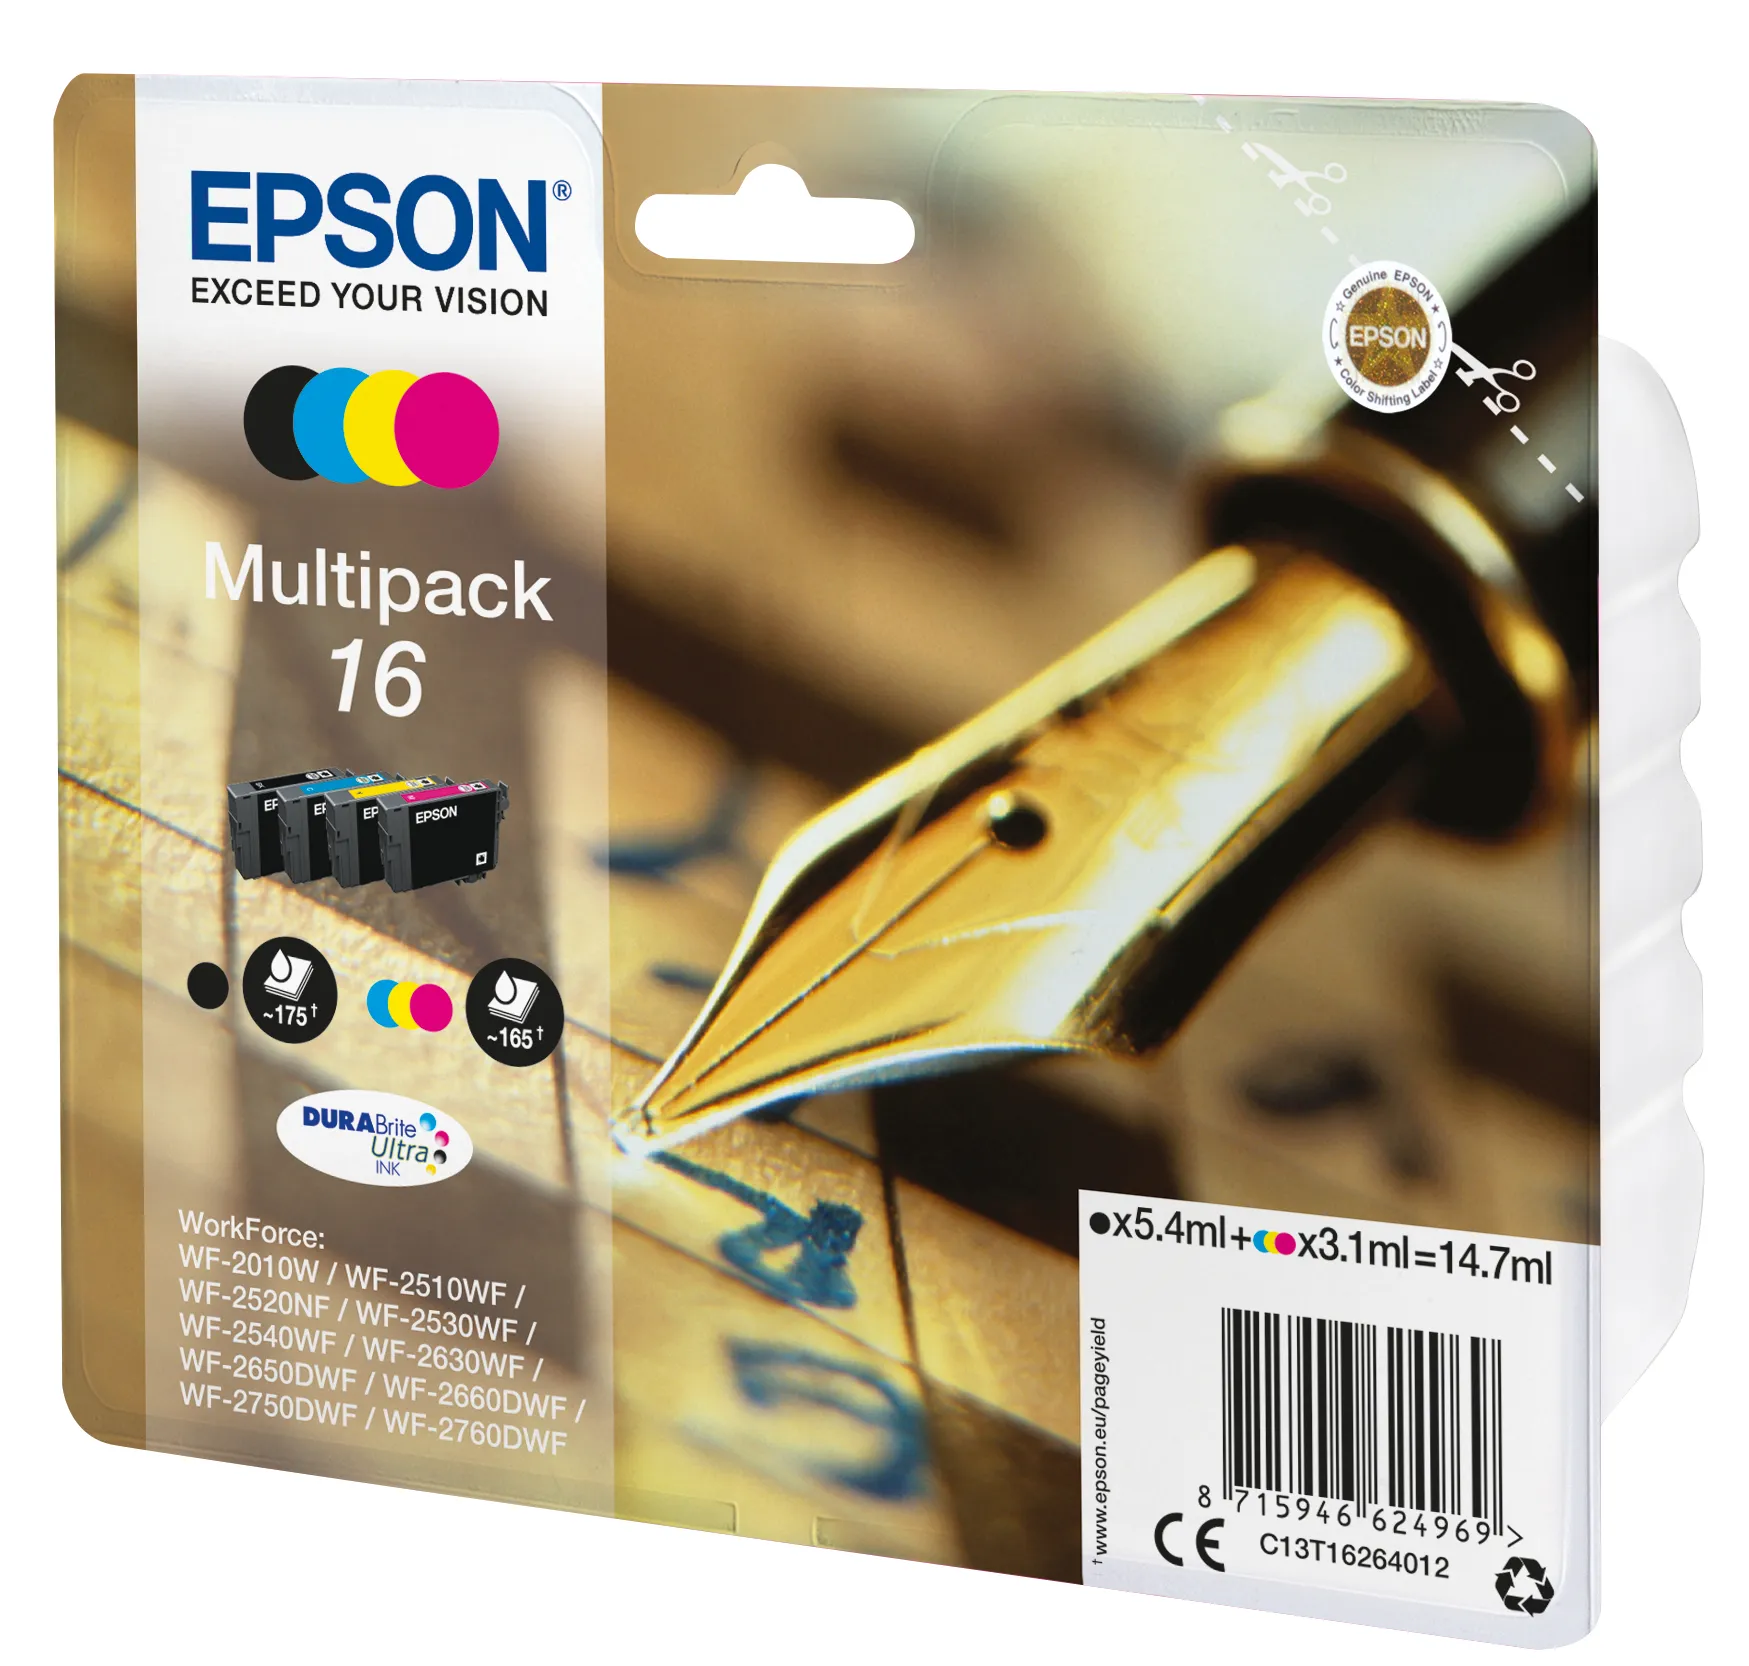 Vente EPSON 16 cartouche encre noir et tricolore capacité Epson au meilleur prix - visuel 4